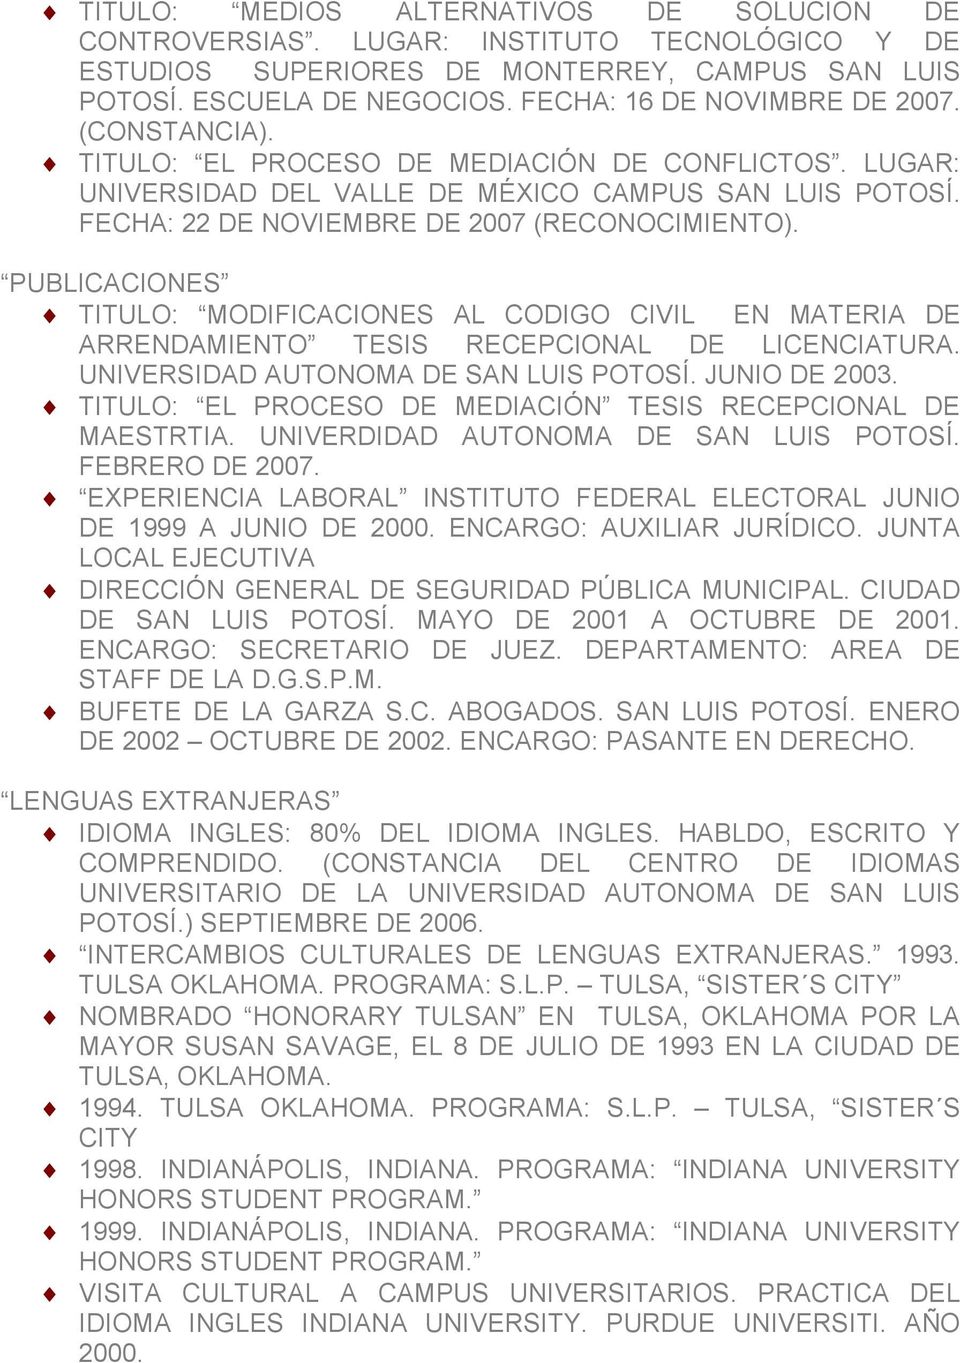 PUBLICACIONES TITULO: MODIFICACIONES AL CODIGO CIVIL EN MATERIA DE ARRENDAMIENTO TESIS RECEPCIONAL DE LICENCIATURA. UNIVERSIDAD AUTONOMA DE SAN LUIS POTOSÍ. JUNIO DE 2003.